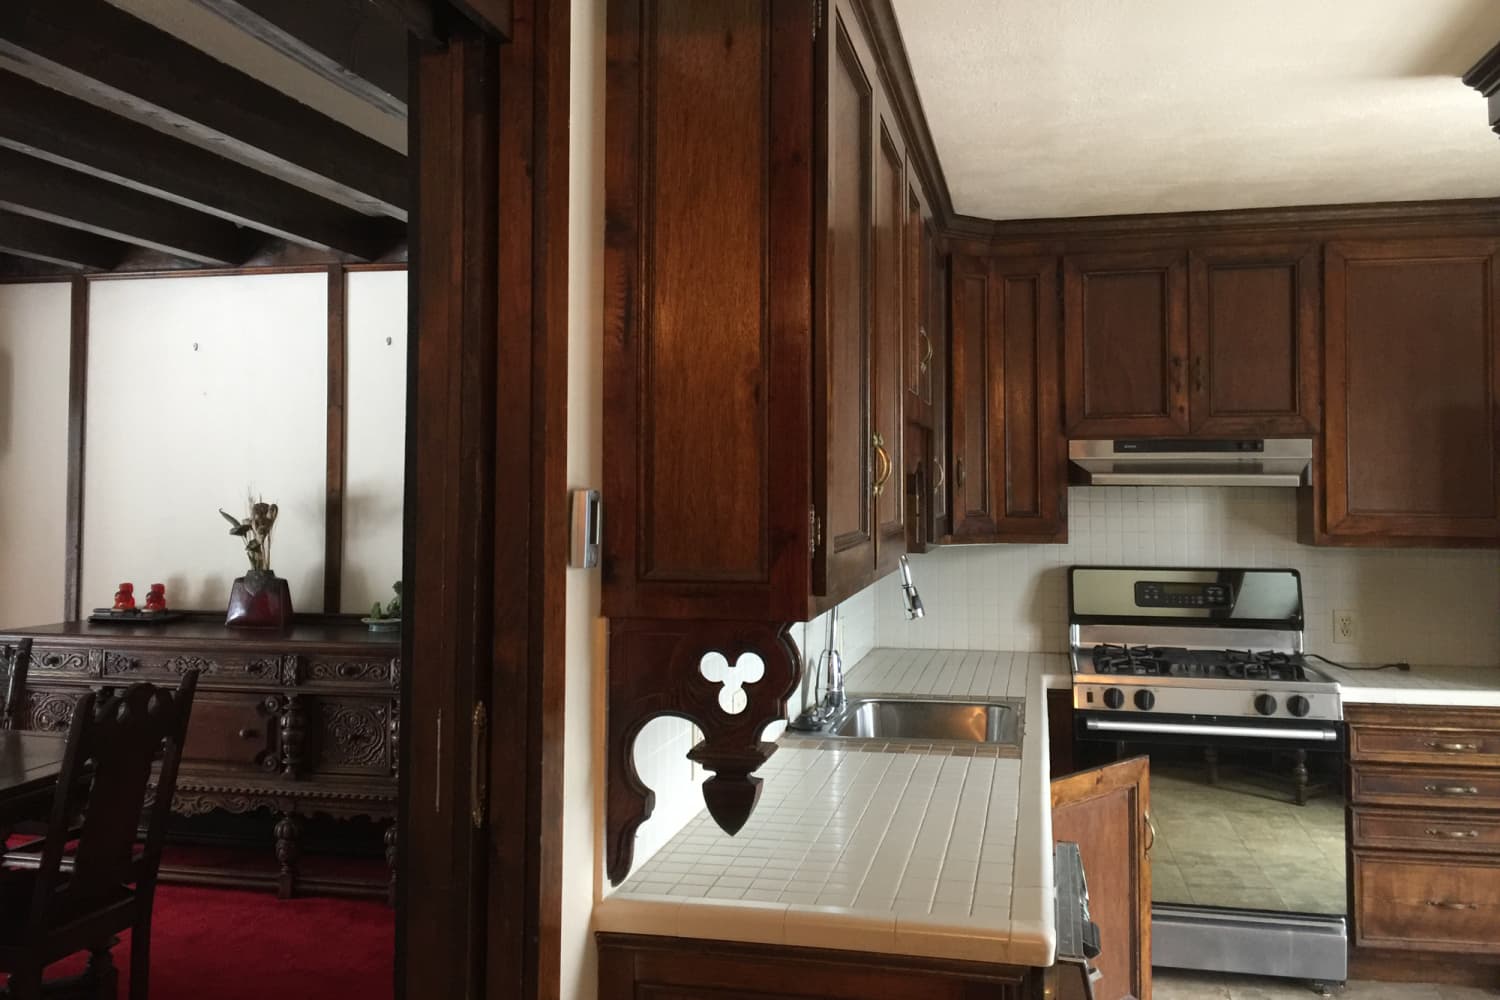 Gothic kitchen remodel, Gothic Victorian style kitchen remo…